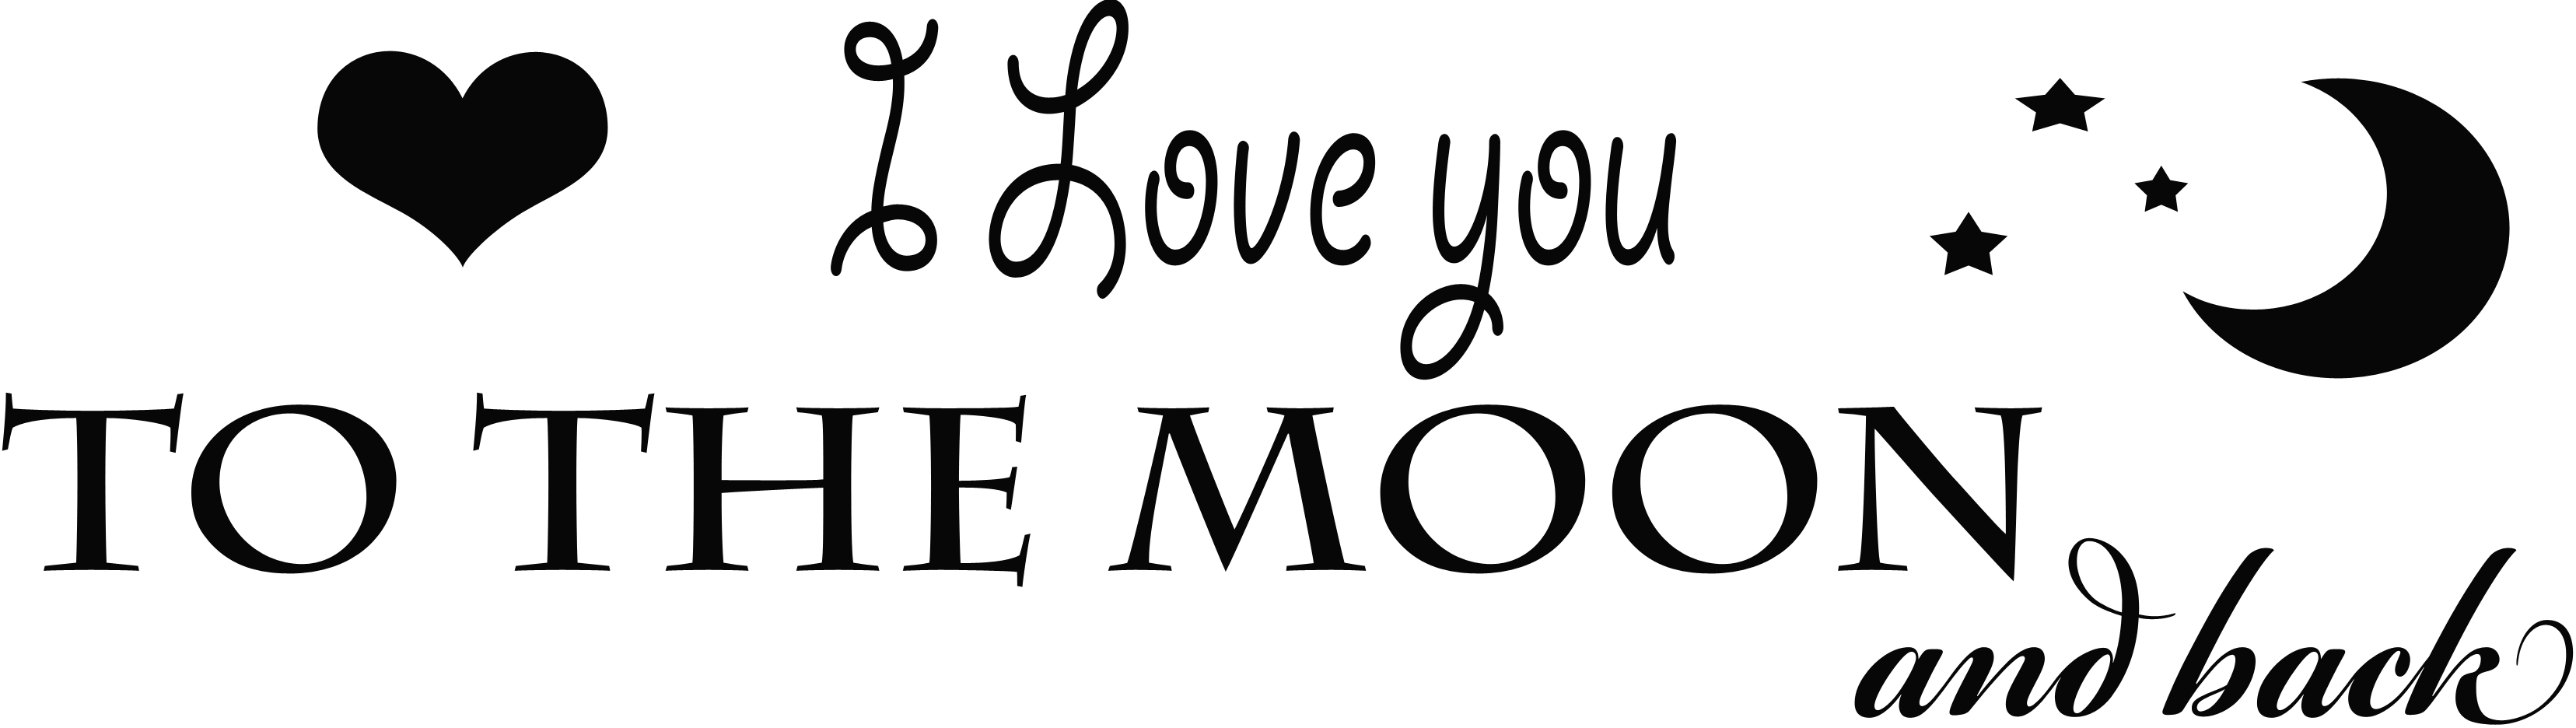 Ik hou van je tot de maan en het Transparante Beeld van PNG